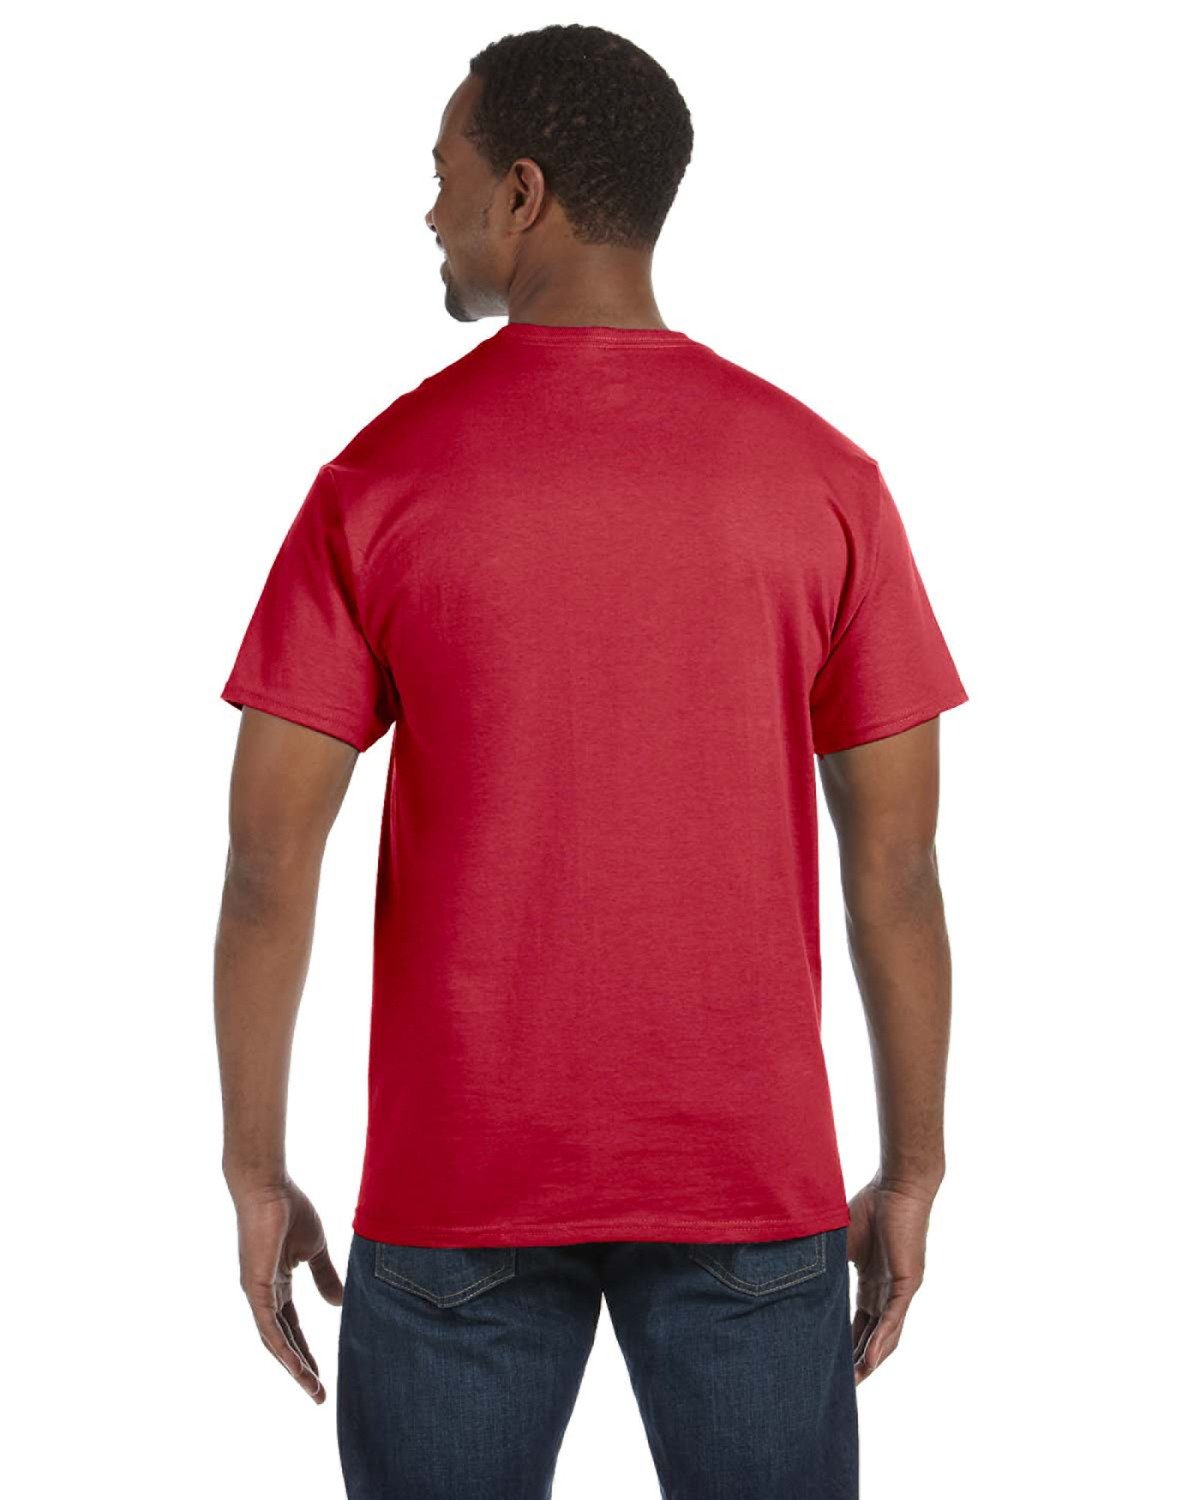 Jerzee Mens TALL T-Shirt 50/50 DriPower Tee XLT 2XLT 3XLT Plain Solid ...